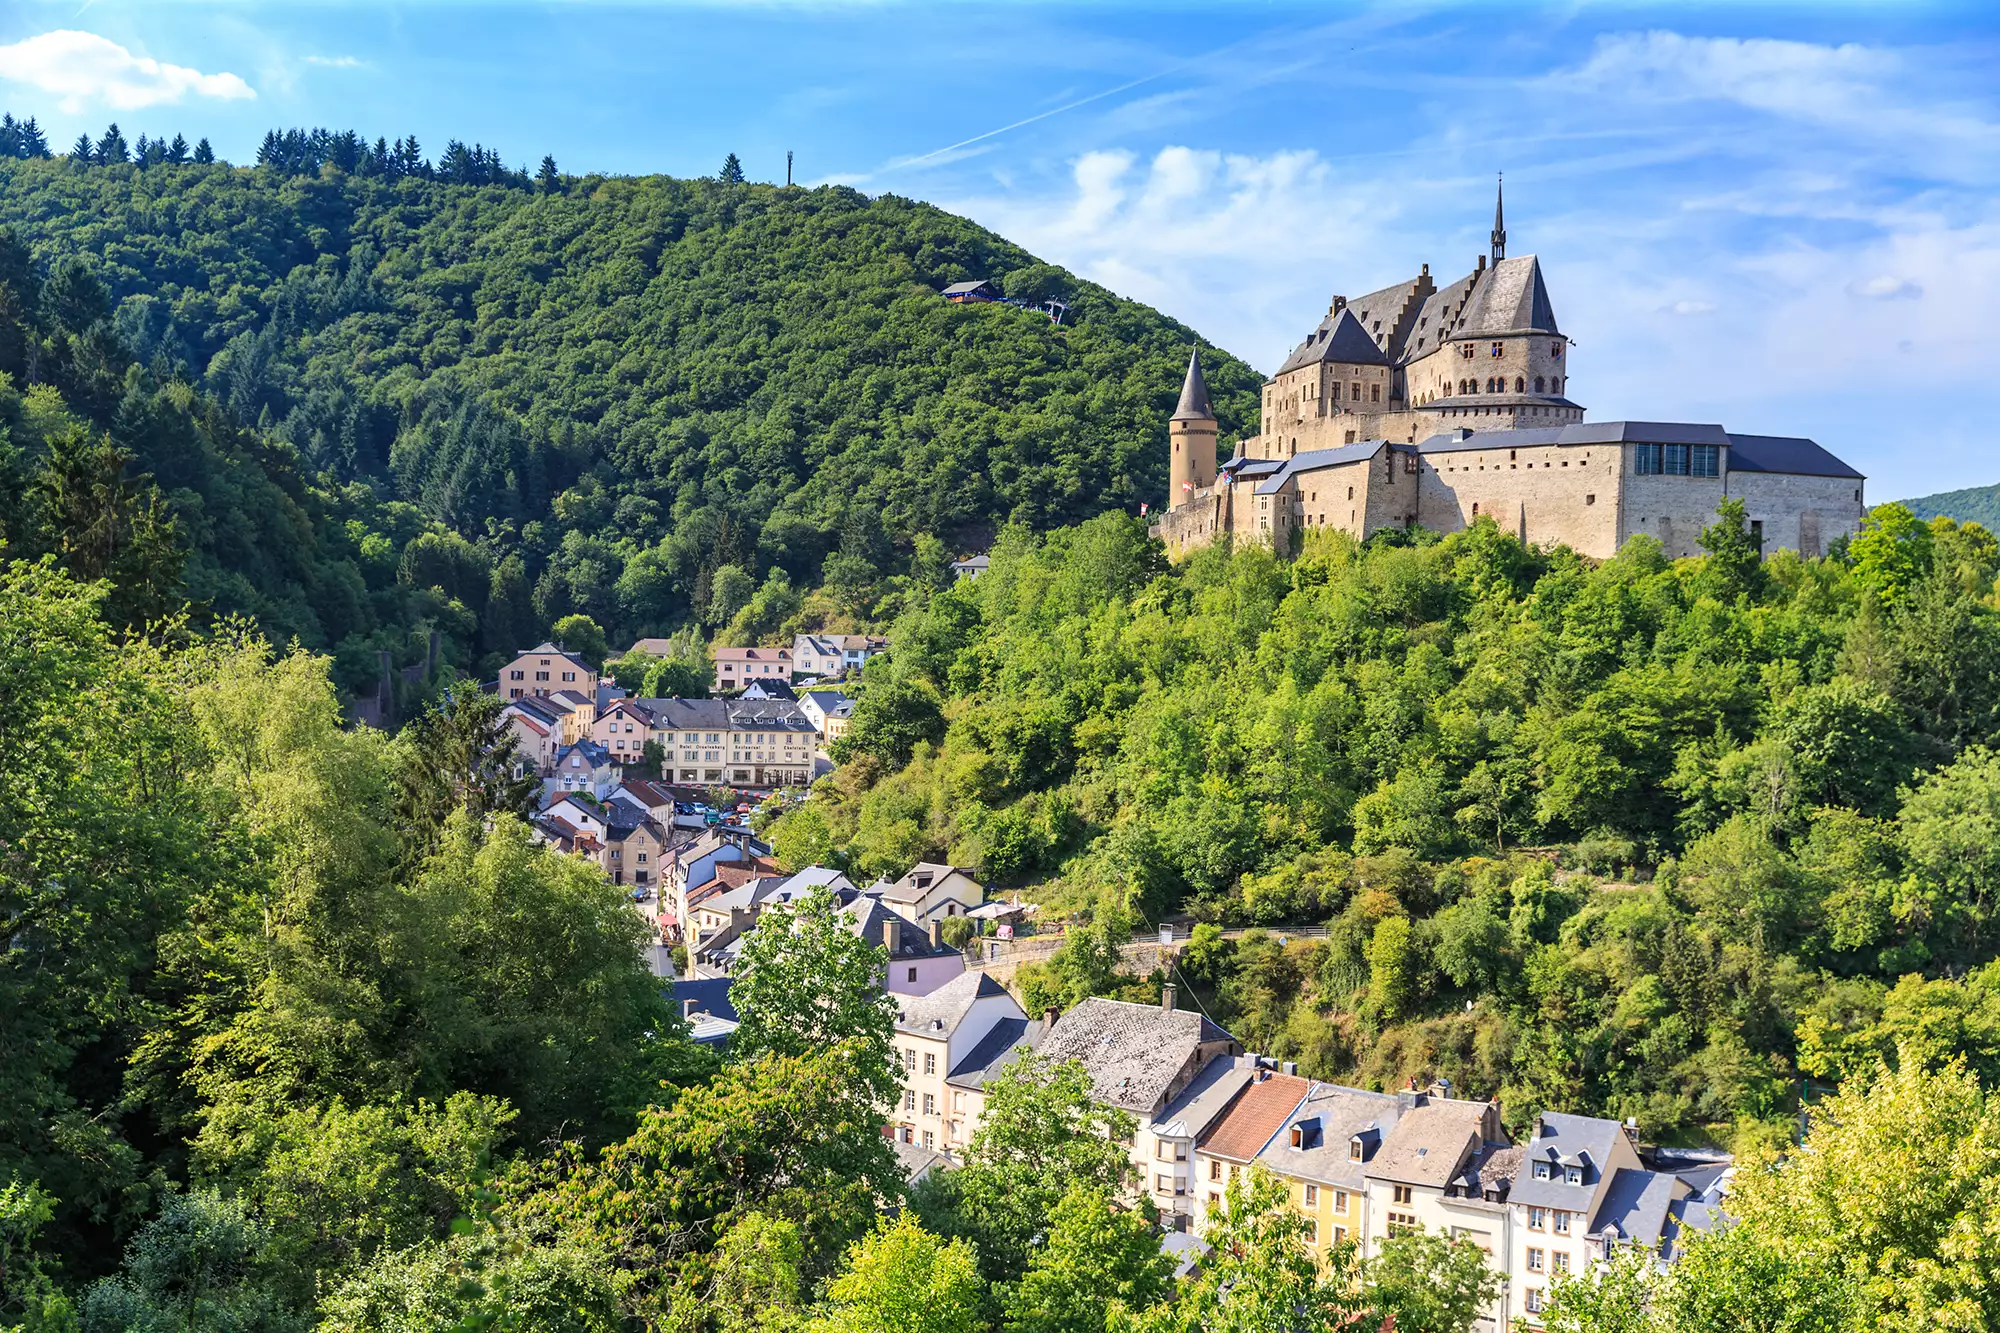 Blick auf die von Bäumen eingebettete Burg Vianden bei einem Luxemburg Städtetrip